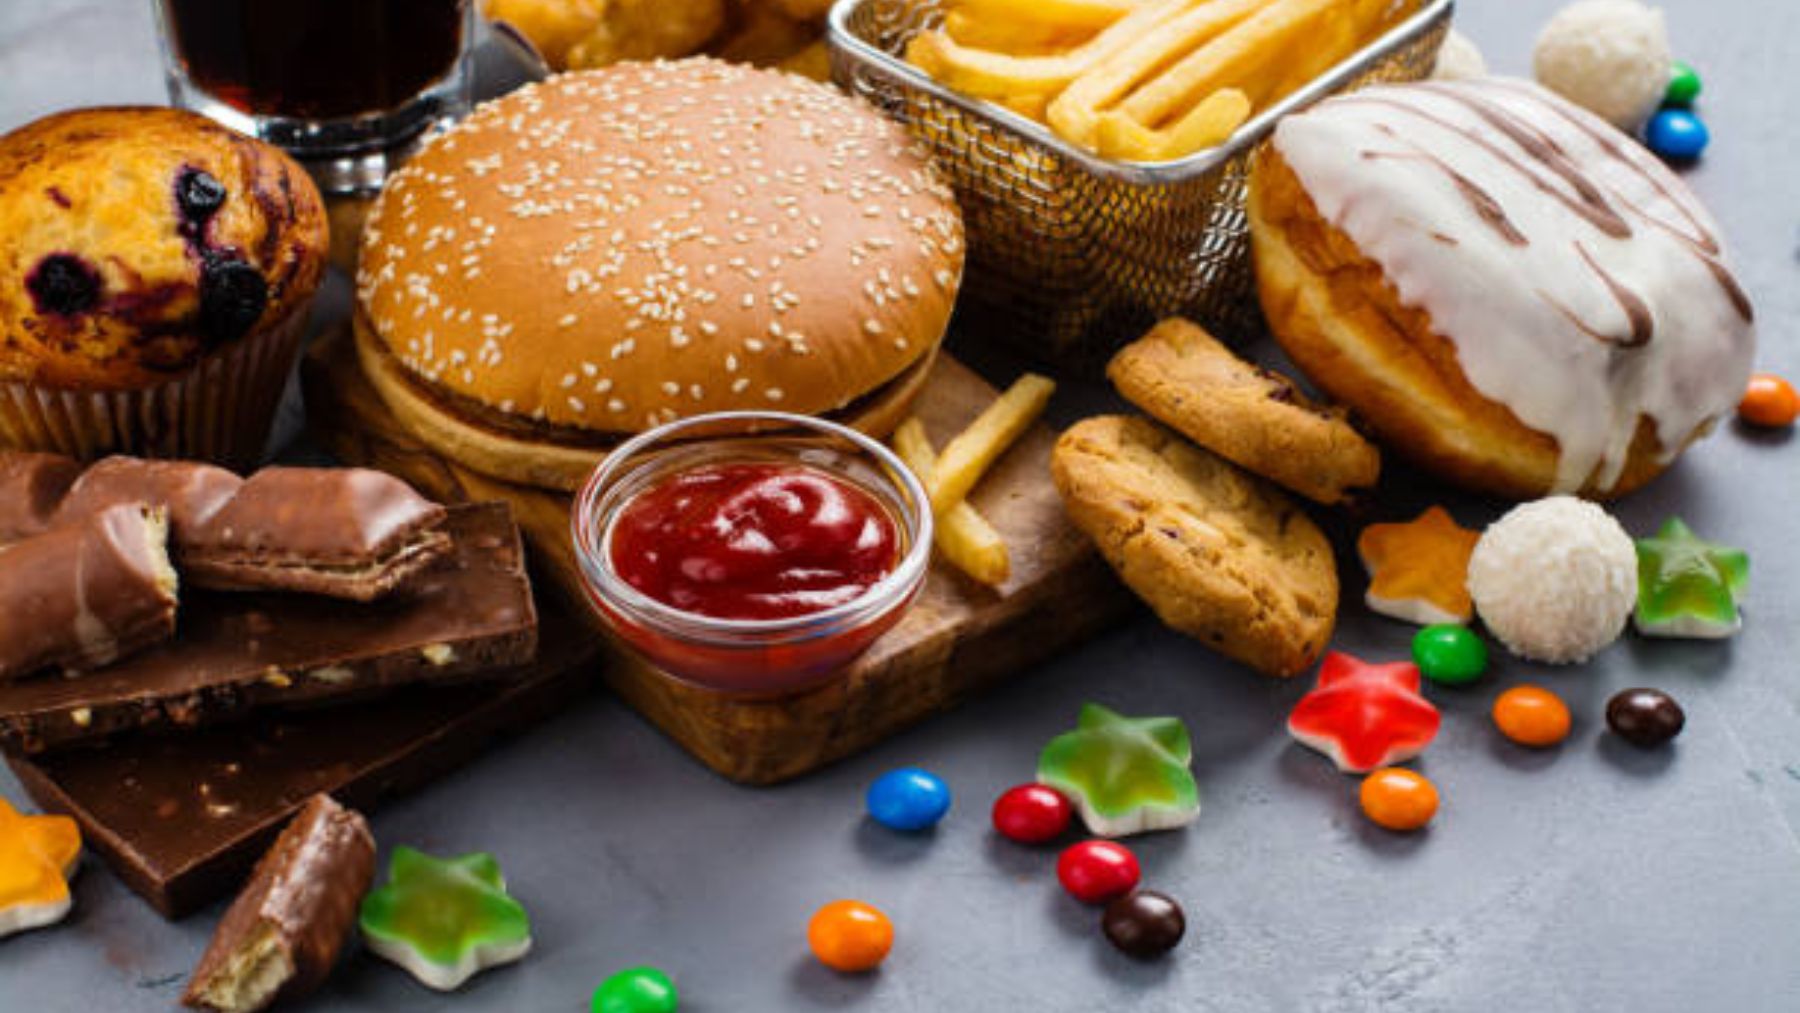 ¿Por qué siempre preferimos la comida basura? Un estudio revela la razón